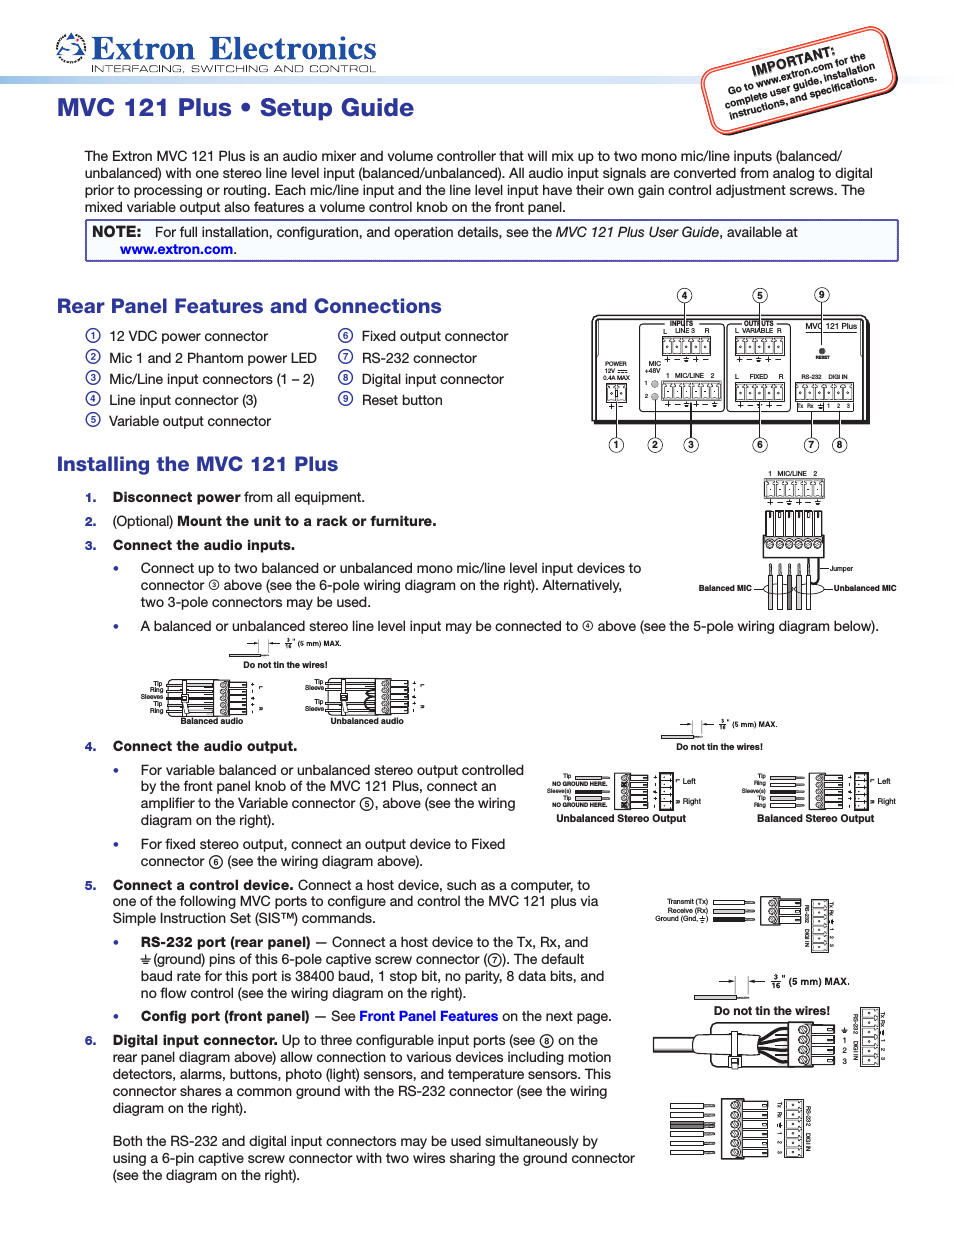 MVC 121 Plus Setup Guide